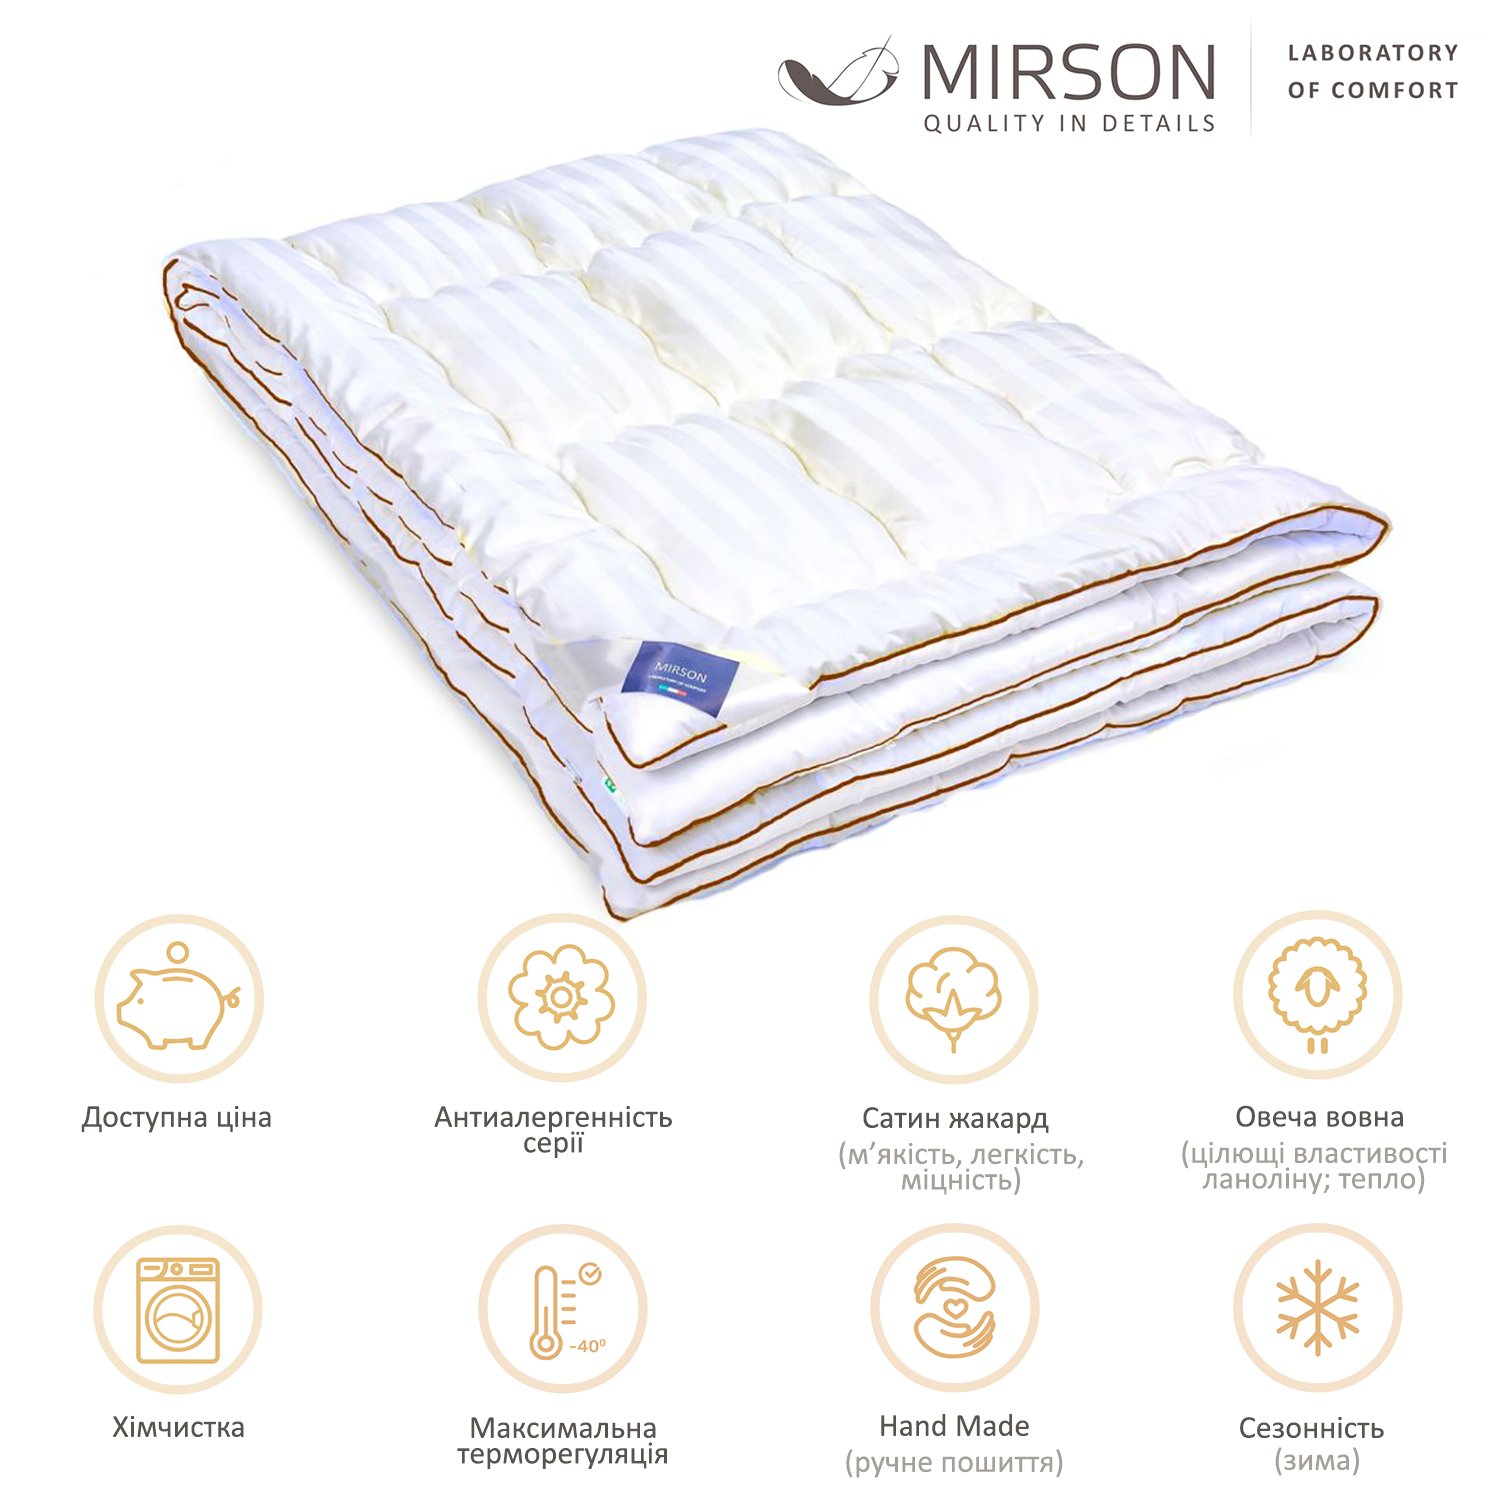 Одеяло шерстяное MirSon Royal Pearl Premium Italy Hand Made №0347, зимнее, 200x220 см, белое - фото 5